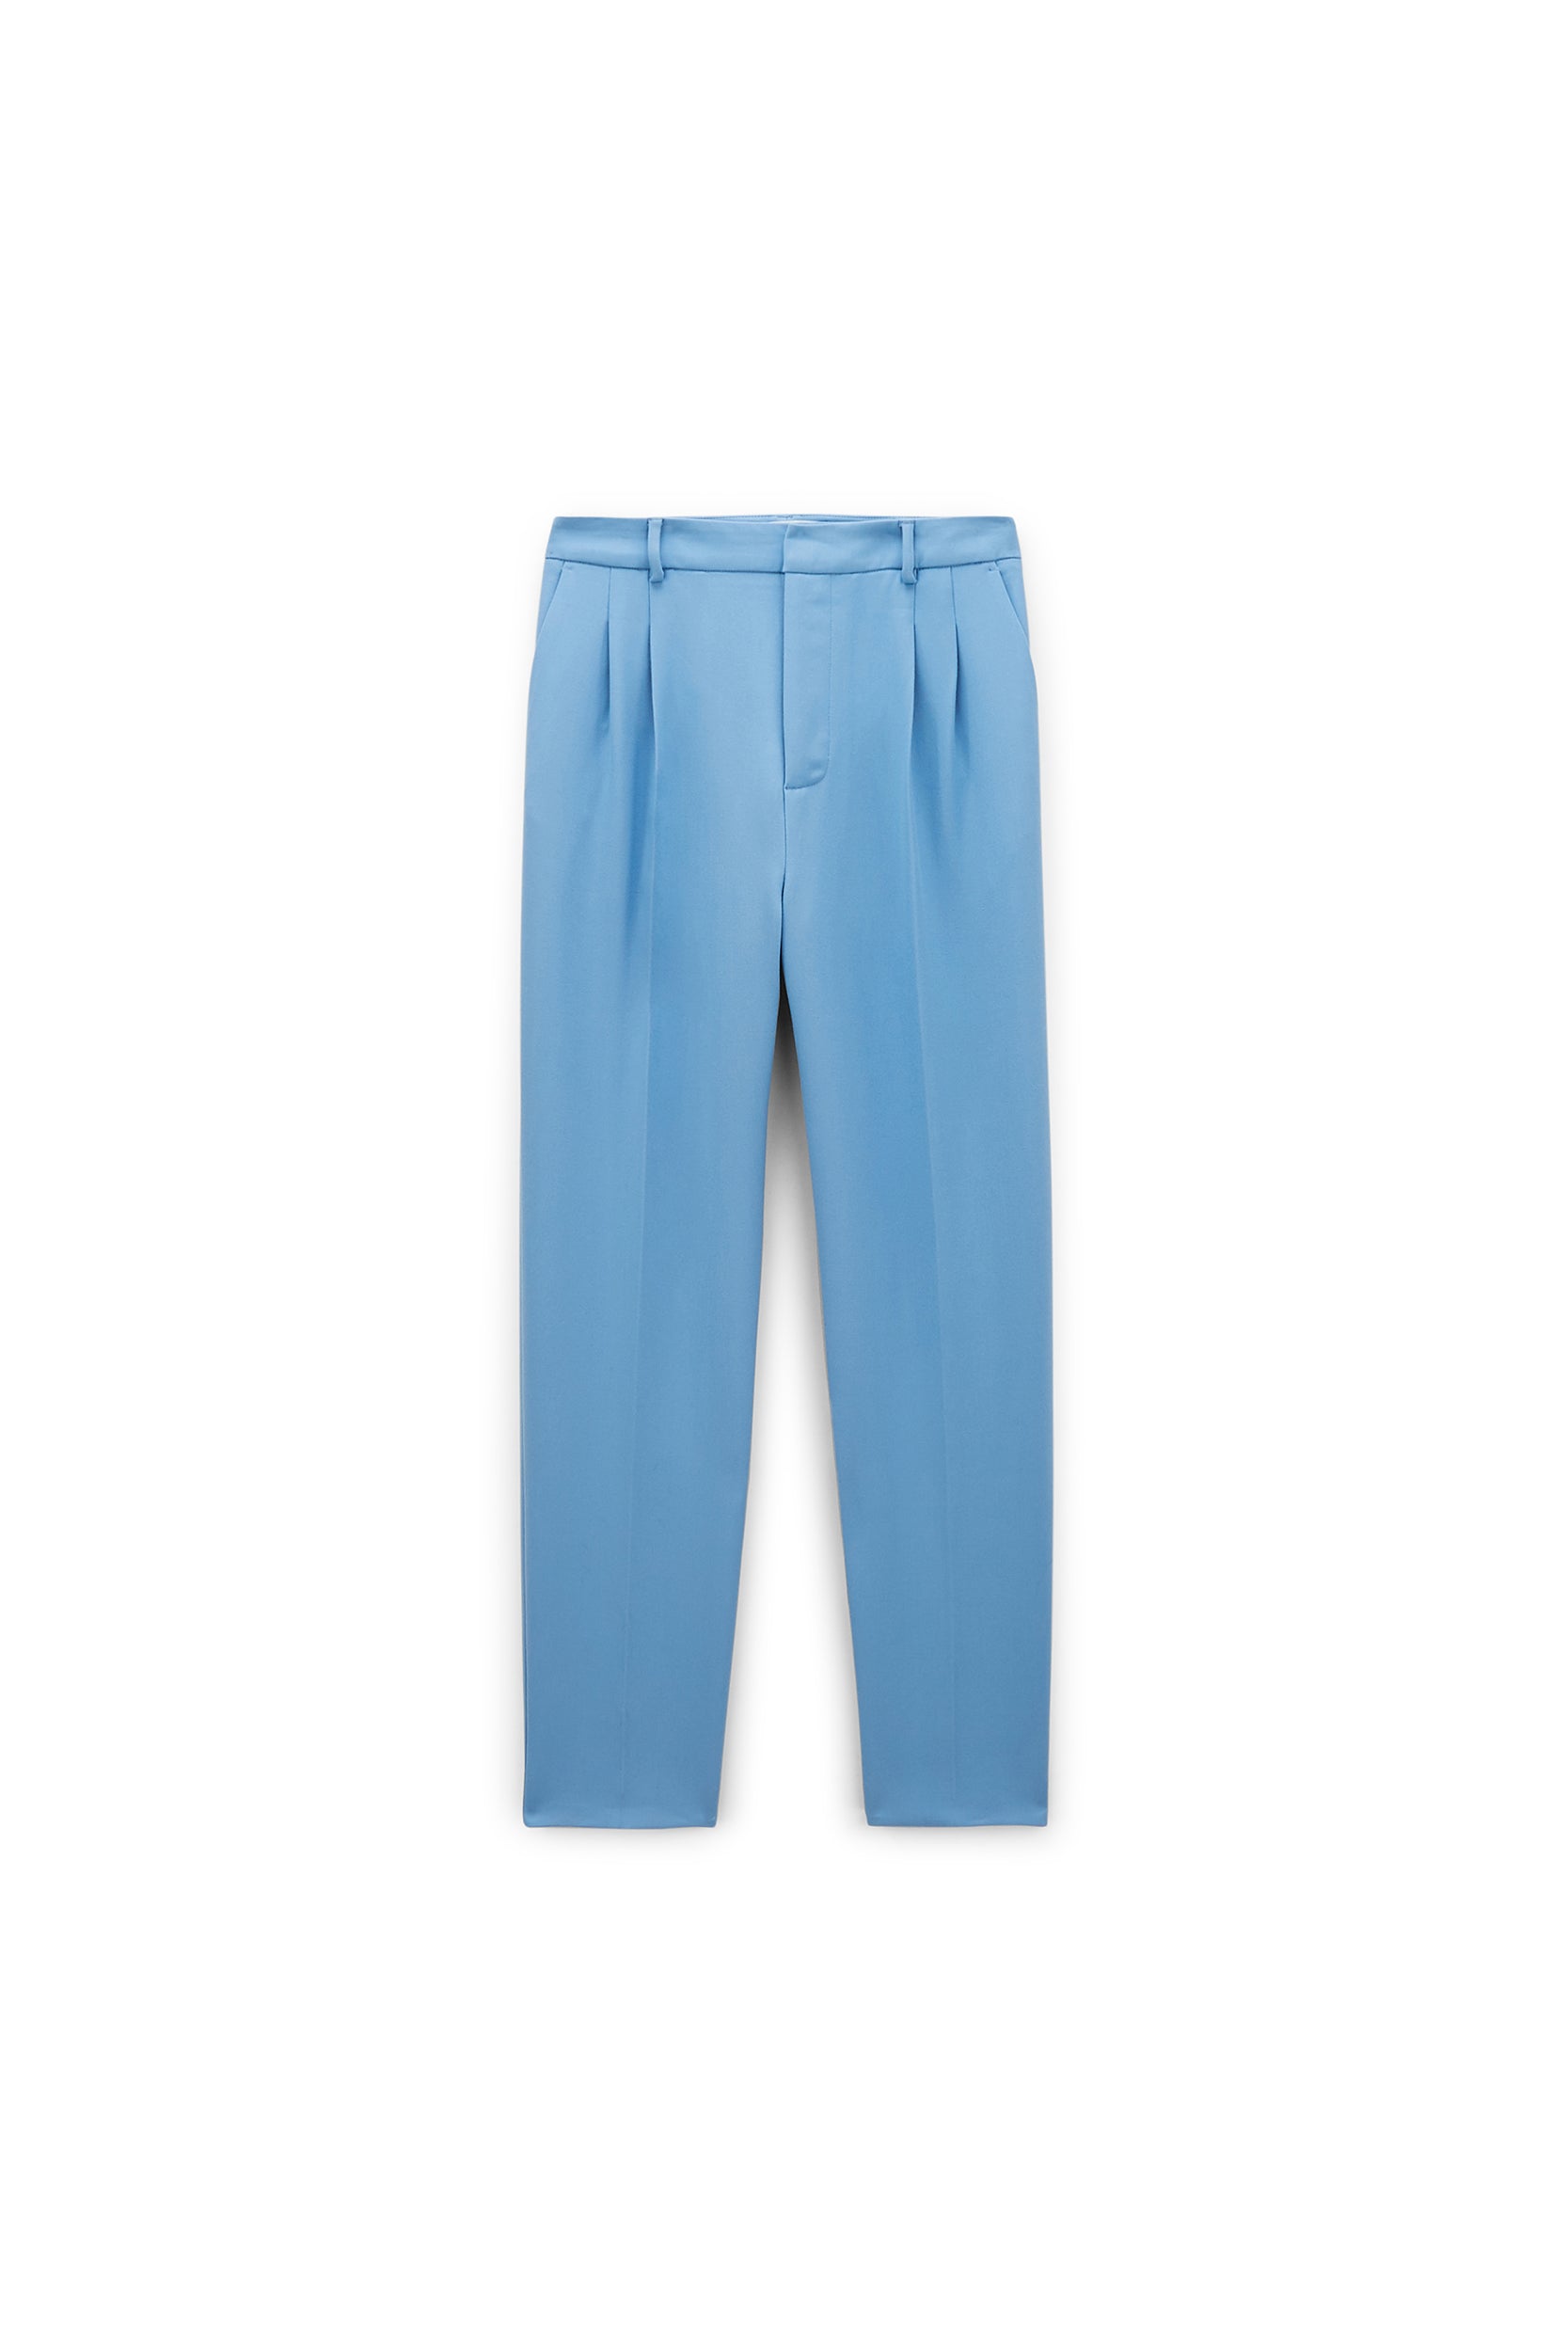 Pantalon Abramo bleu ciel